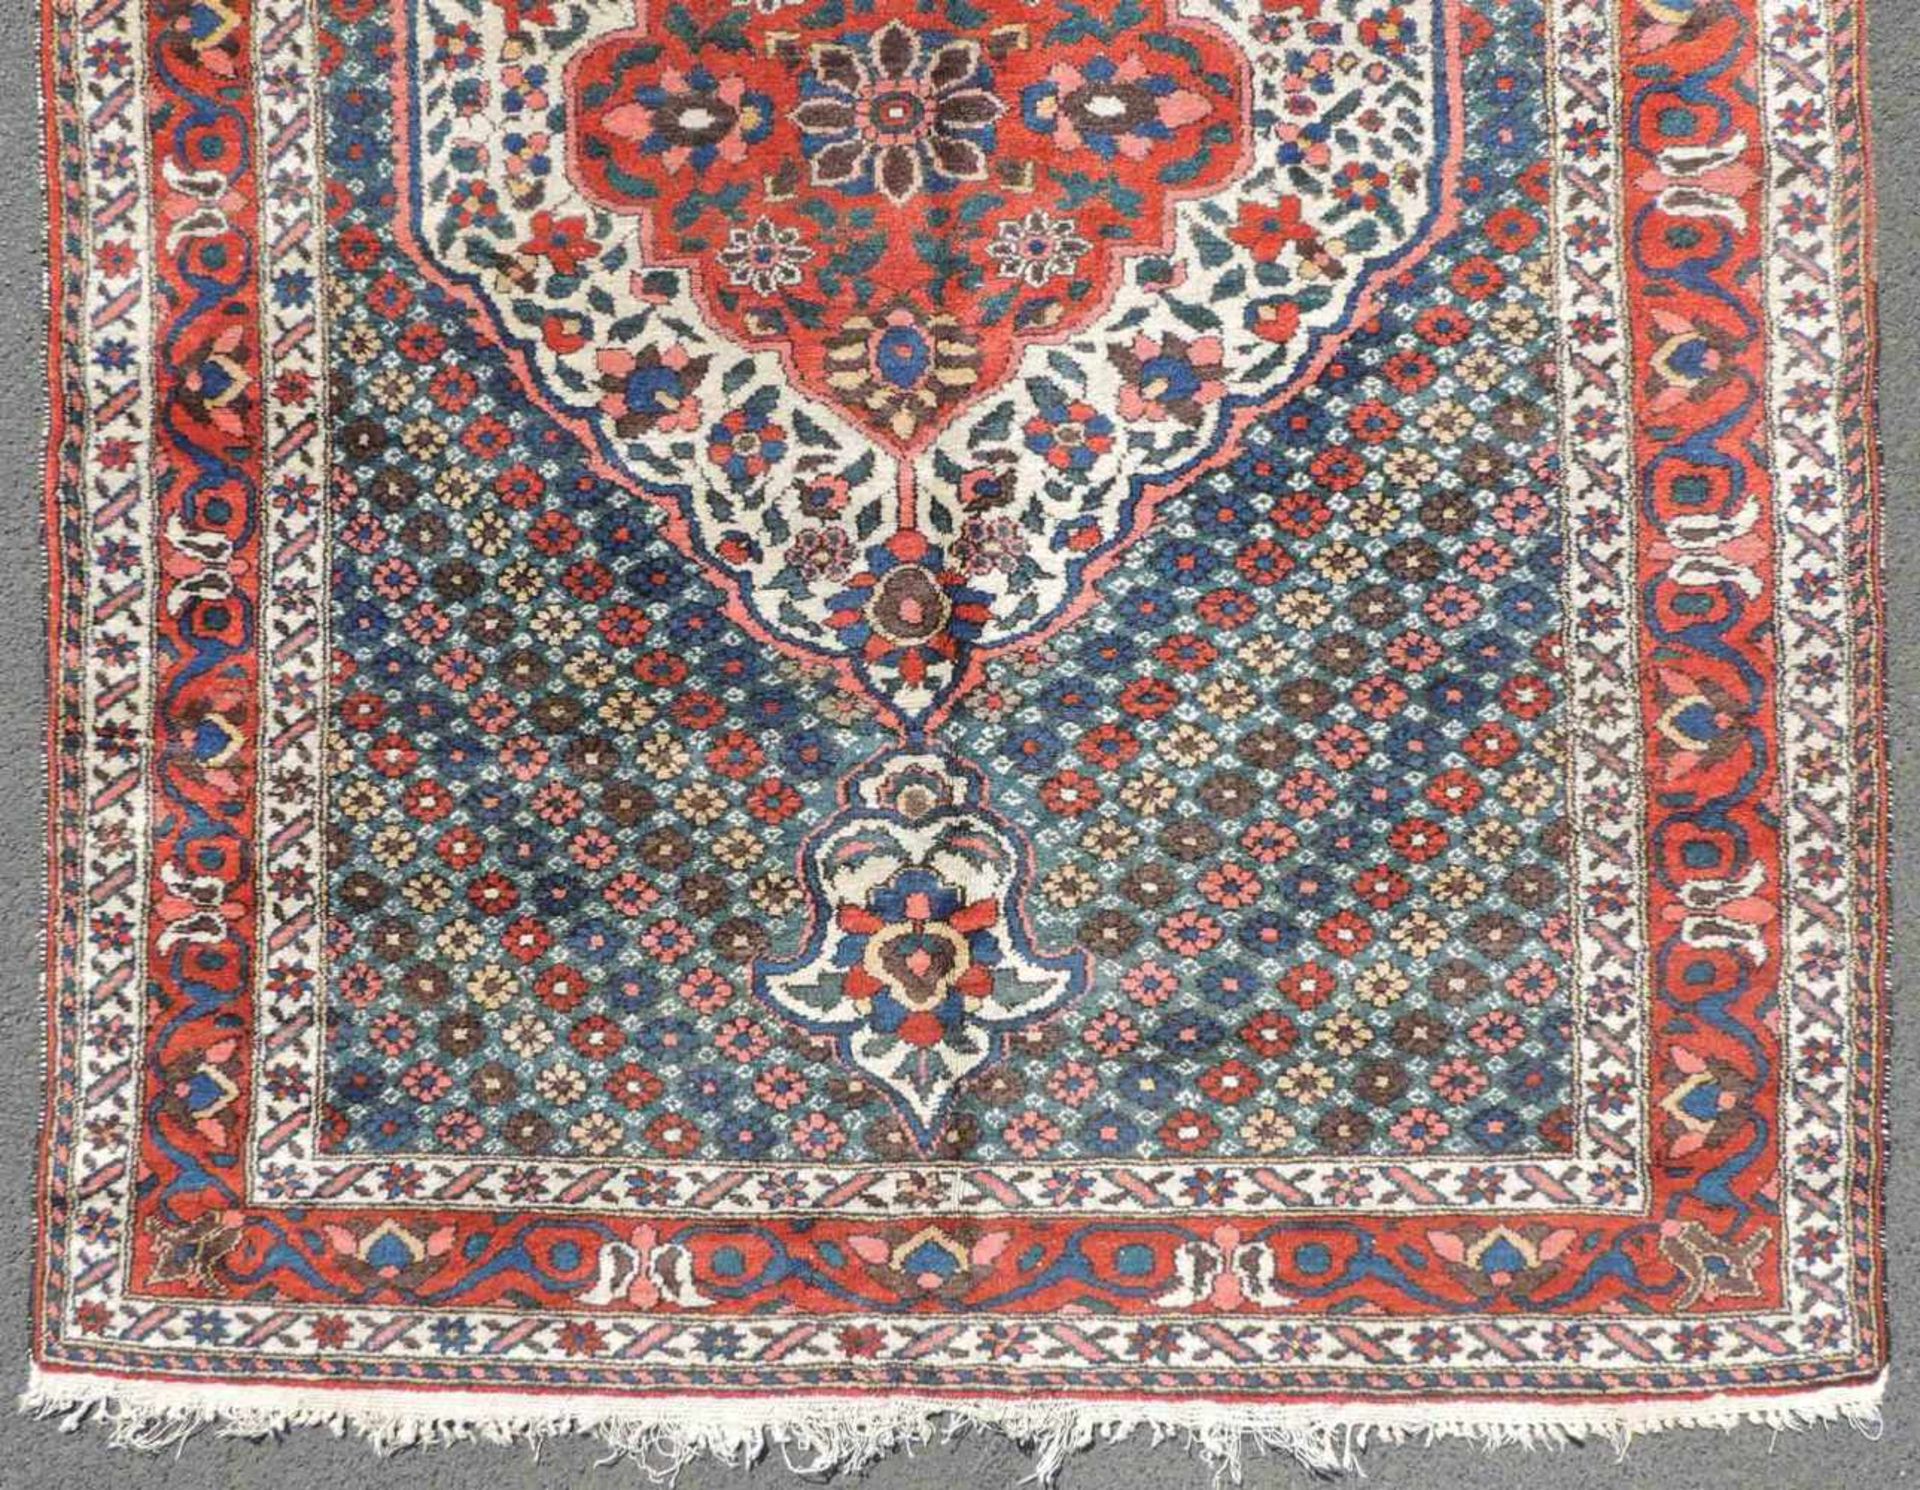 Bachtiari Perserteppich. Iran. Alt, 1. Hälfte 20. Jahrhundert. 211 cm x 147 cm. Handgeknüpft. - Image 2 of 5